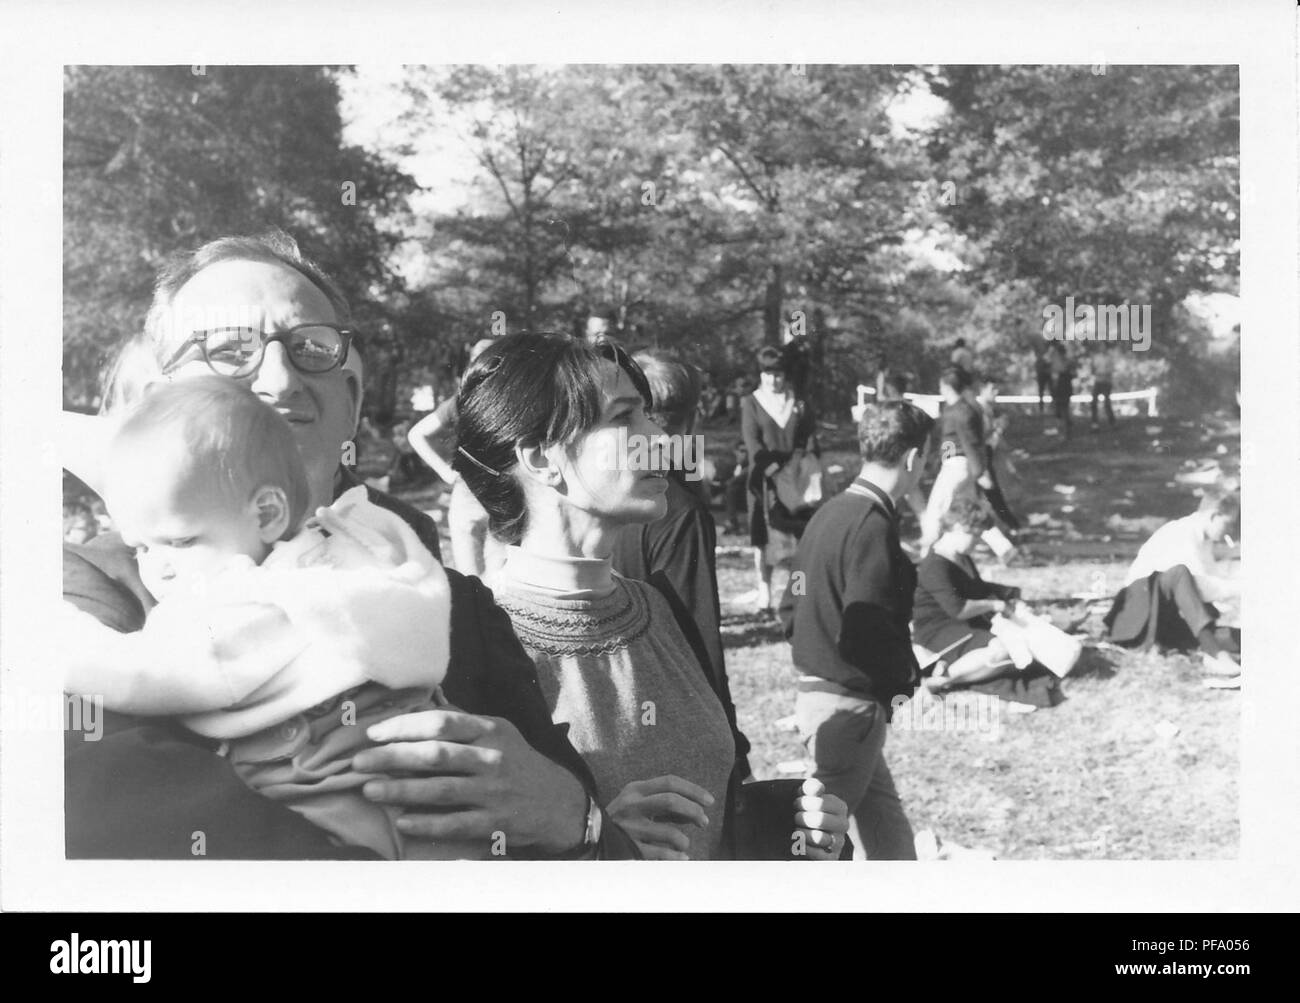 Photographie noir et blanc, représentant un homme portant des lunettes et tenant un bébé au premier plan, avec une femme de profil, debout juste derrière lui, et plusieurs autres personnes dans l'arrière-plan, tout le monde s'est réuni pour protester contre la guerre du Vietnam, à Washington DC, United States, 1969. () Banque D'Images